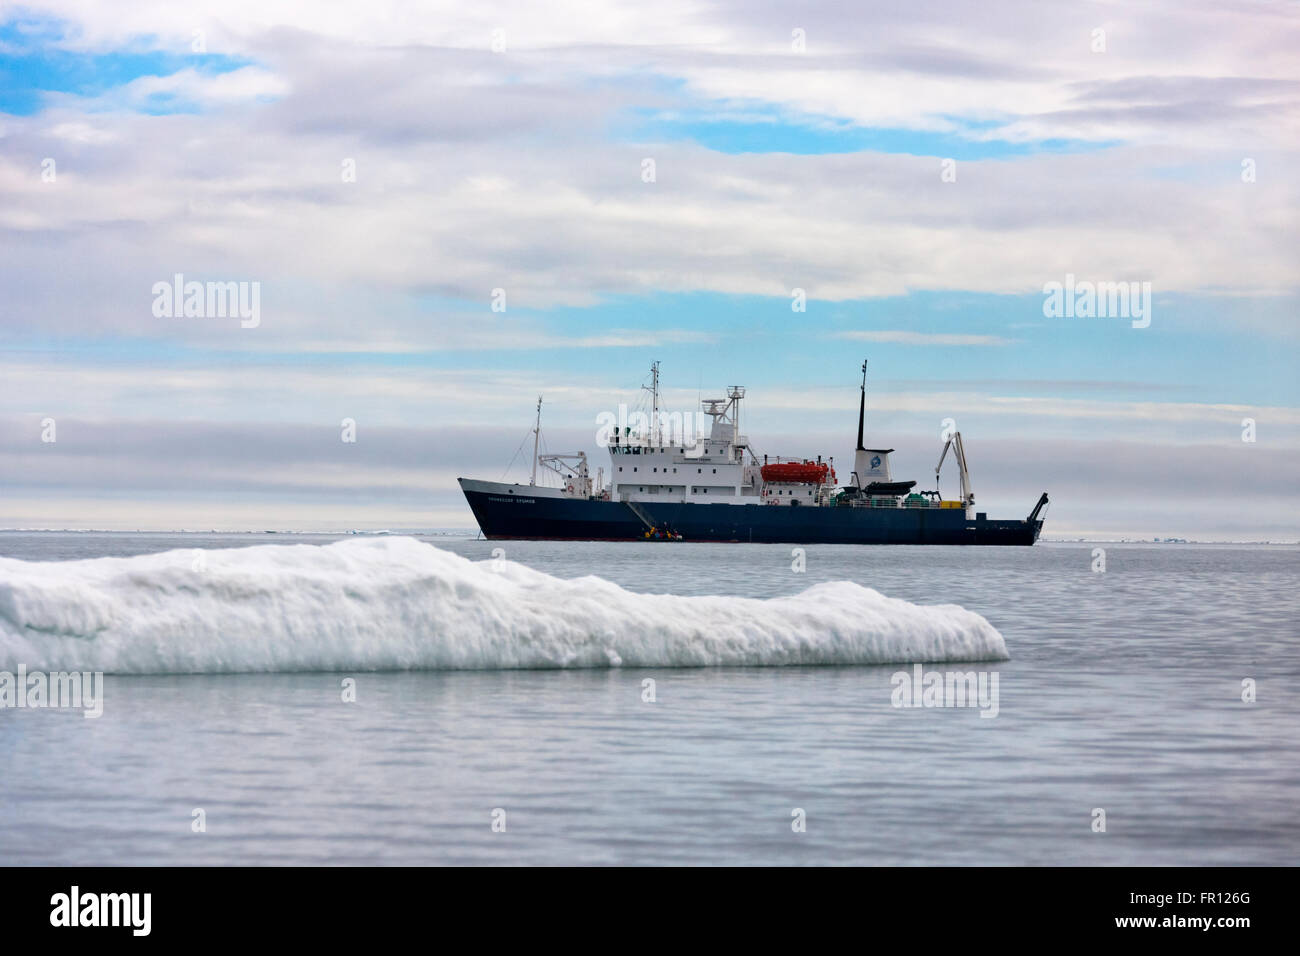 Bateau de croisière sur la glace, le Cap Vankarem, l'île Wrangel, mer de Tchoukotka, en Russie extrême-orient Banque D'Images